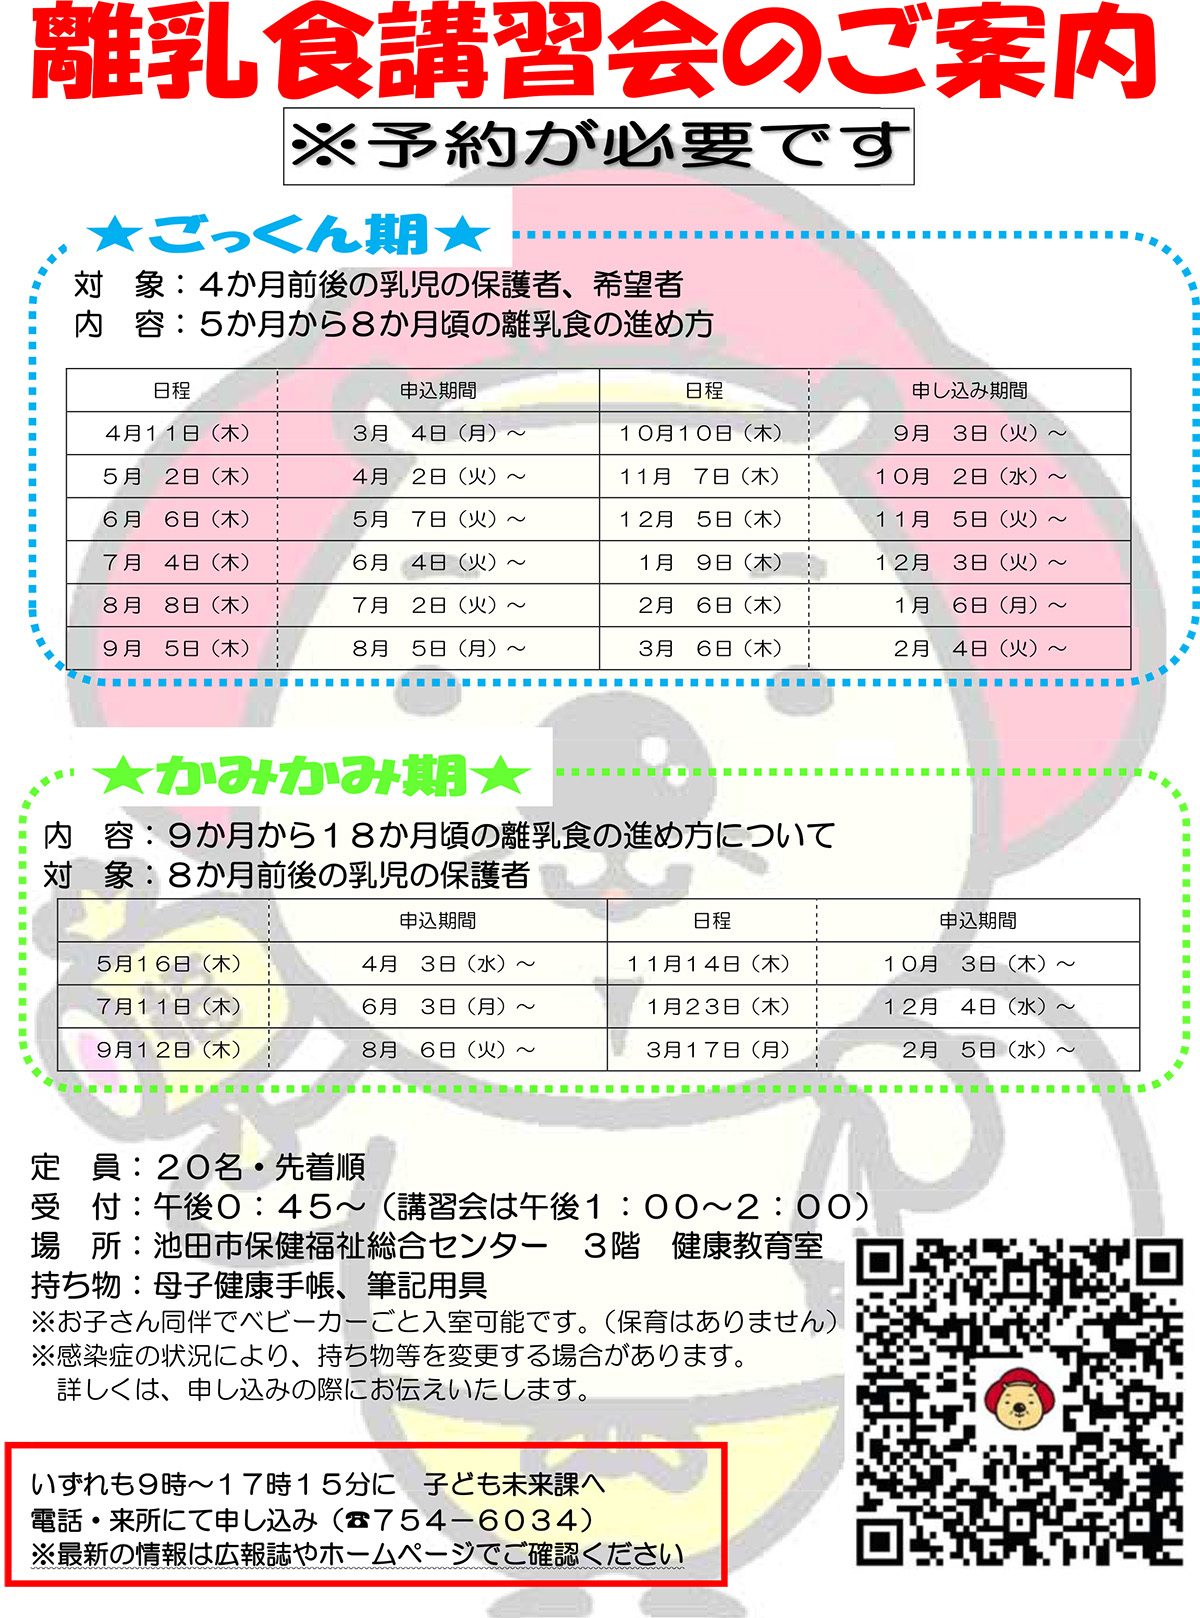 【予約制】離乳食講習会 6月6日開催ごっくん期